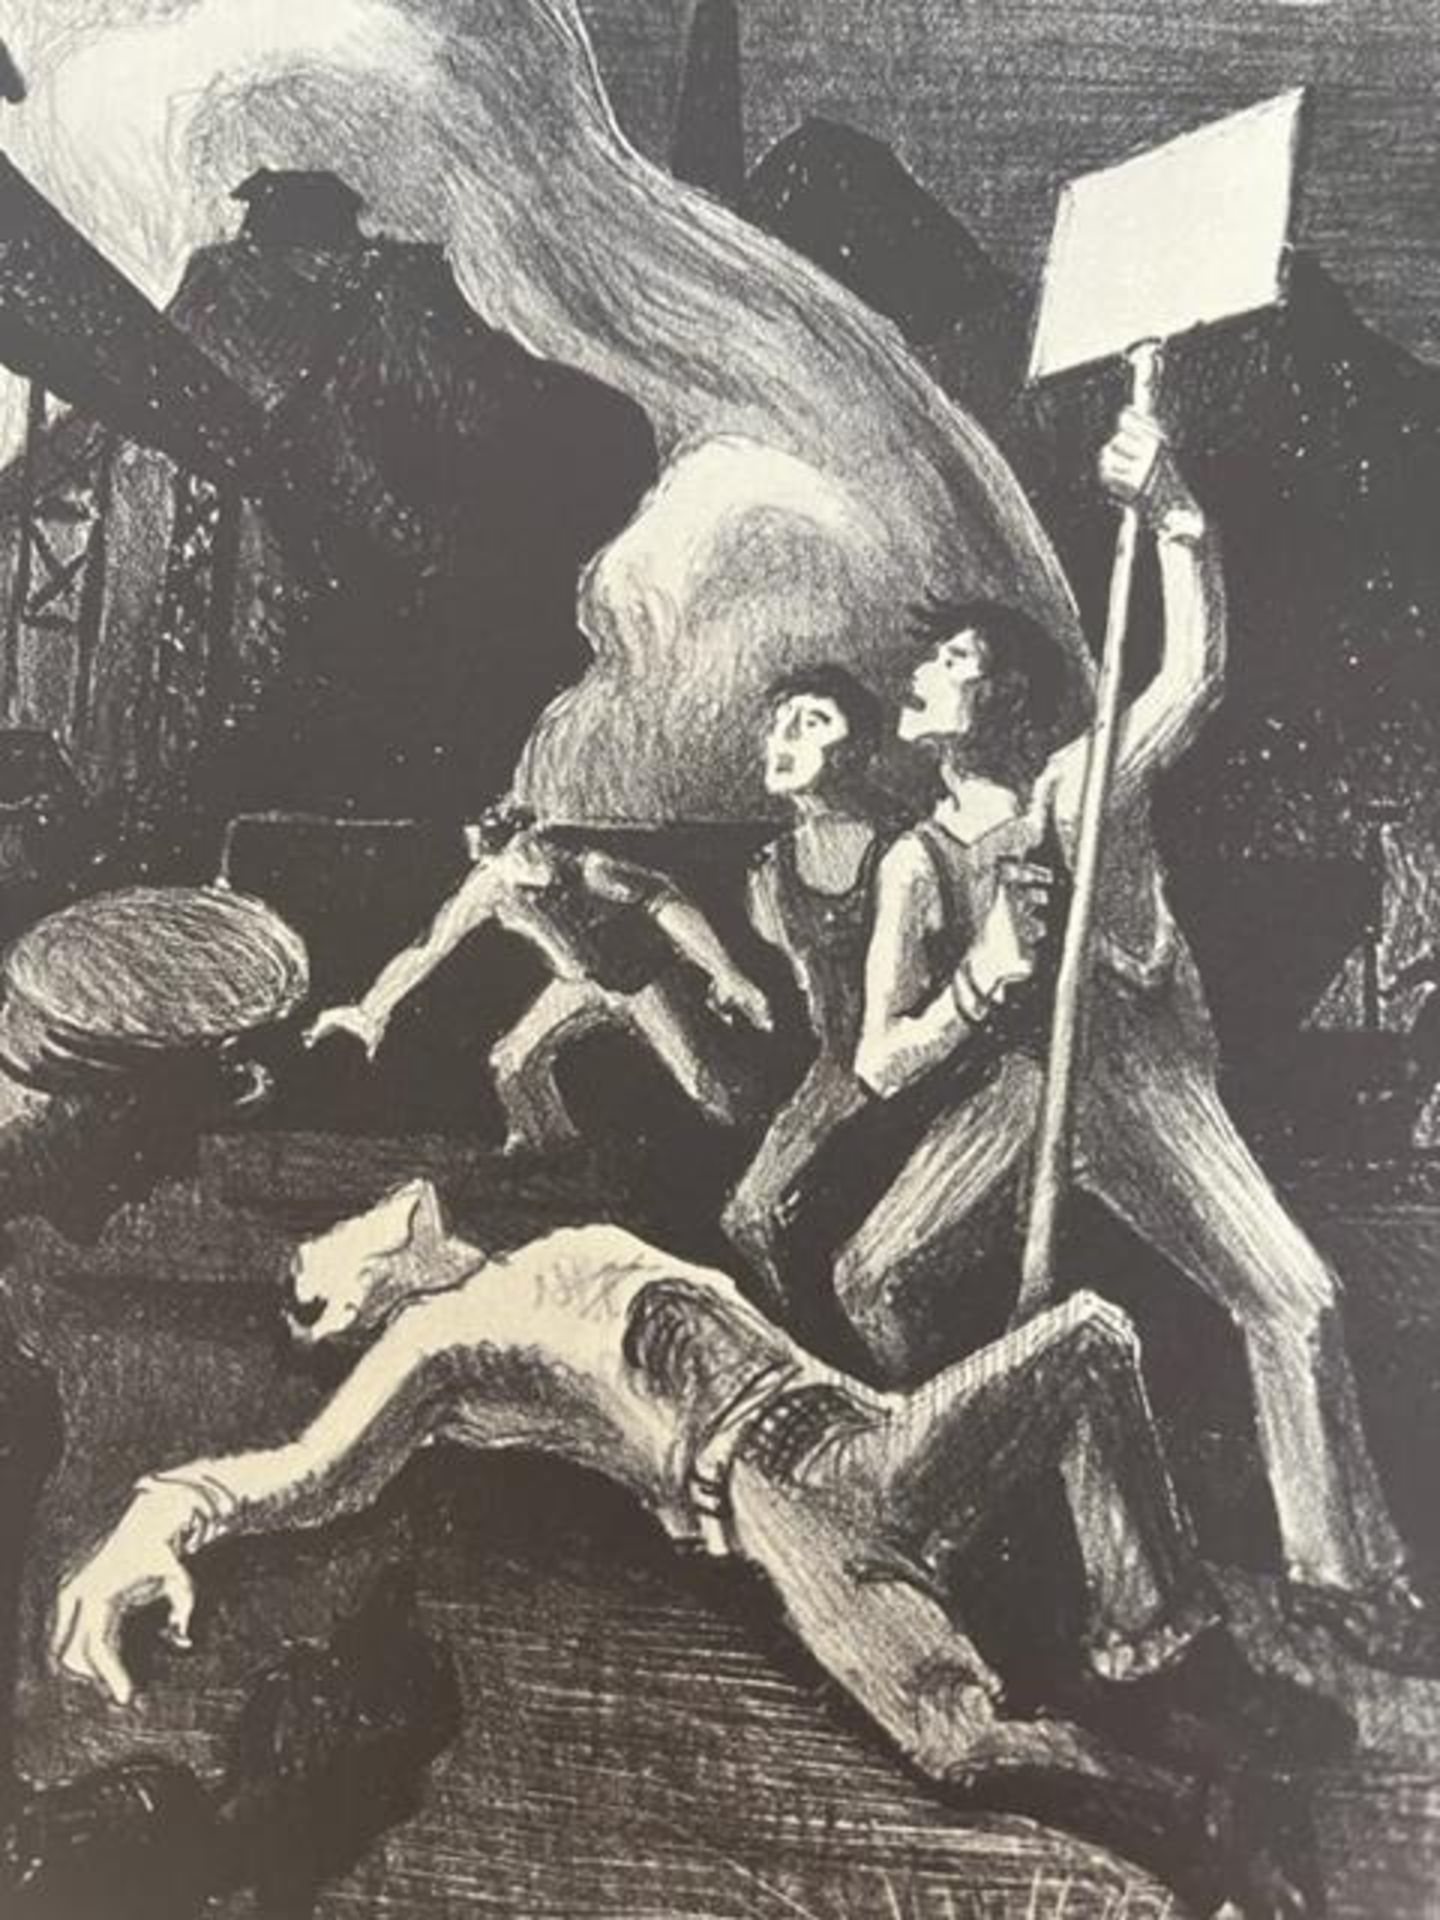 Thomas Hart Benton "Strike" Print. - Image 5 of 6